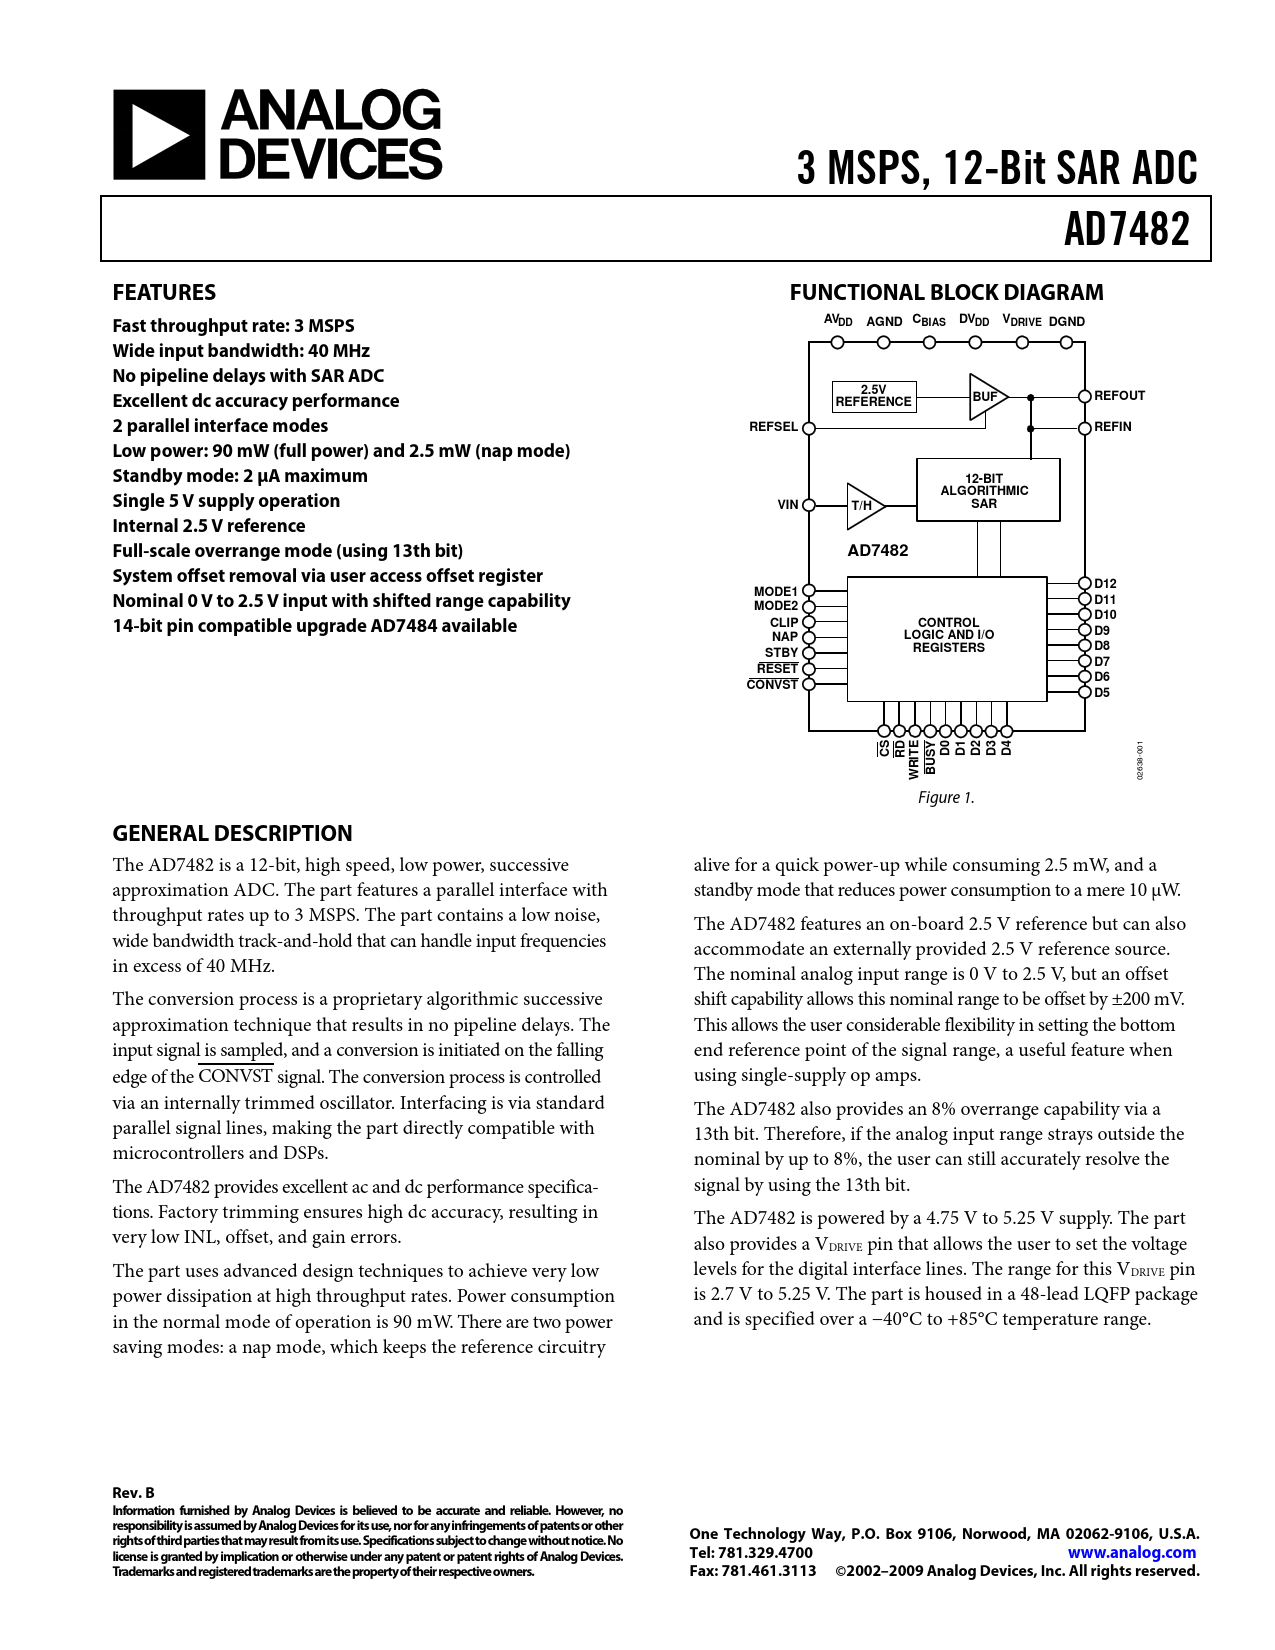 Datasheet AD7482 Analog Devices, Версия: B